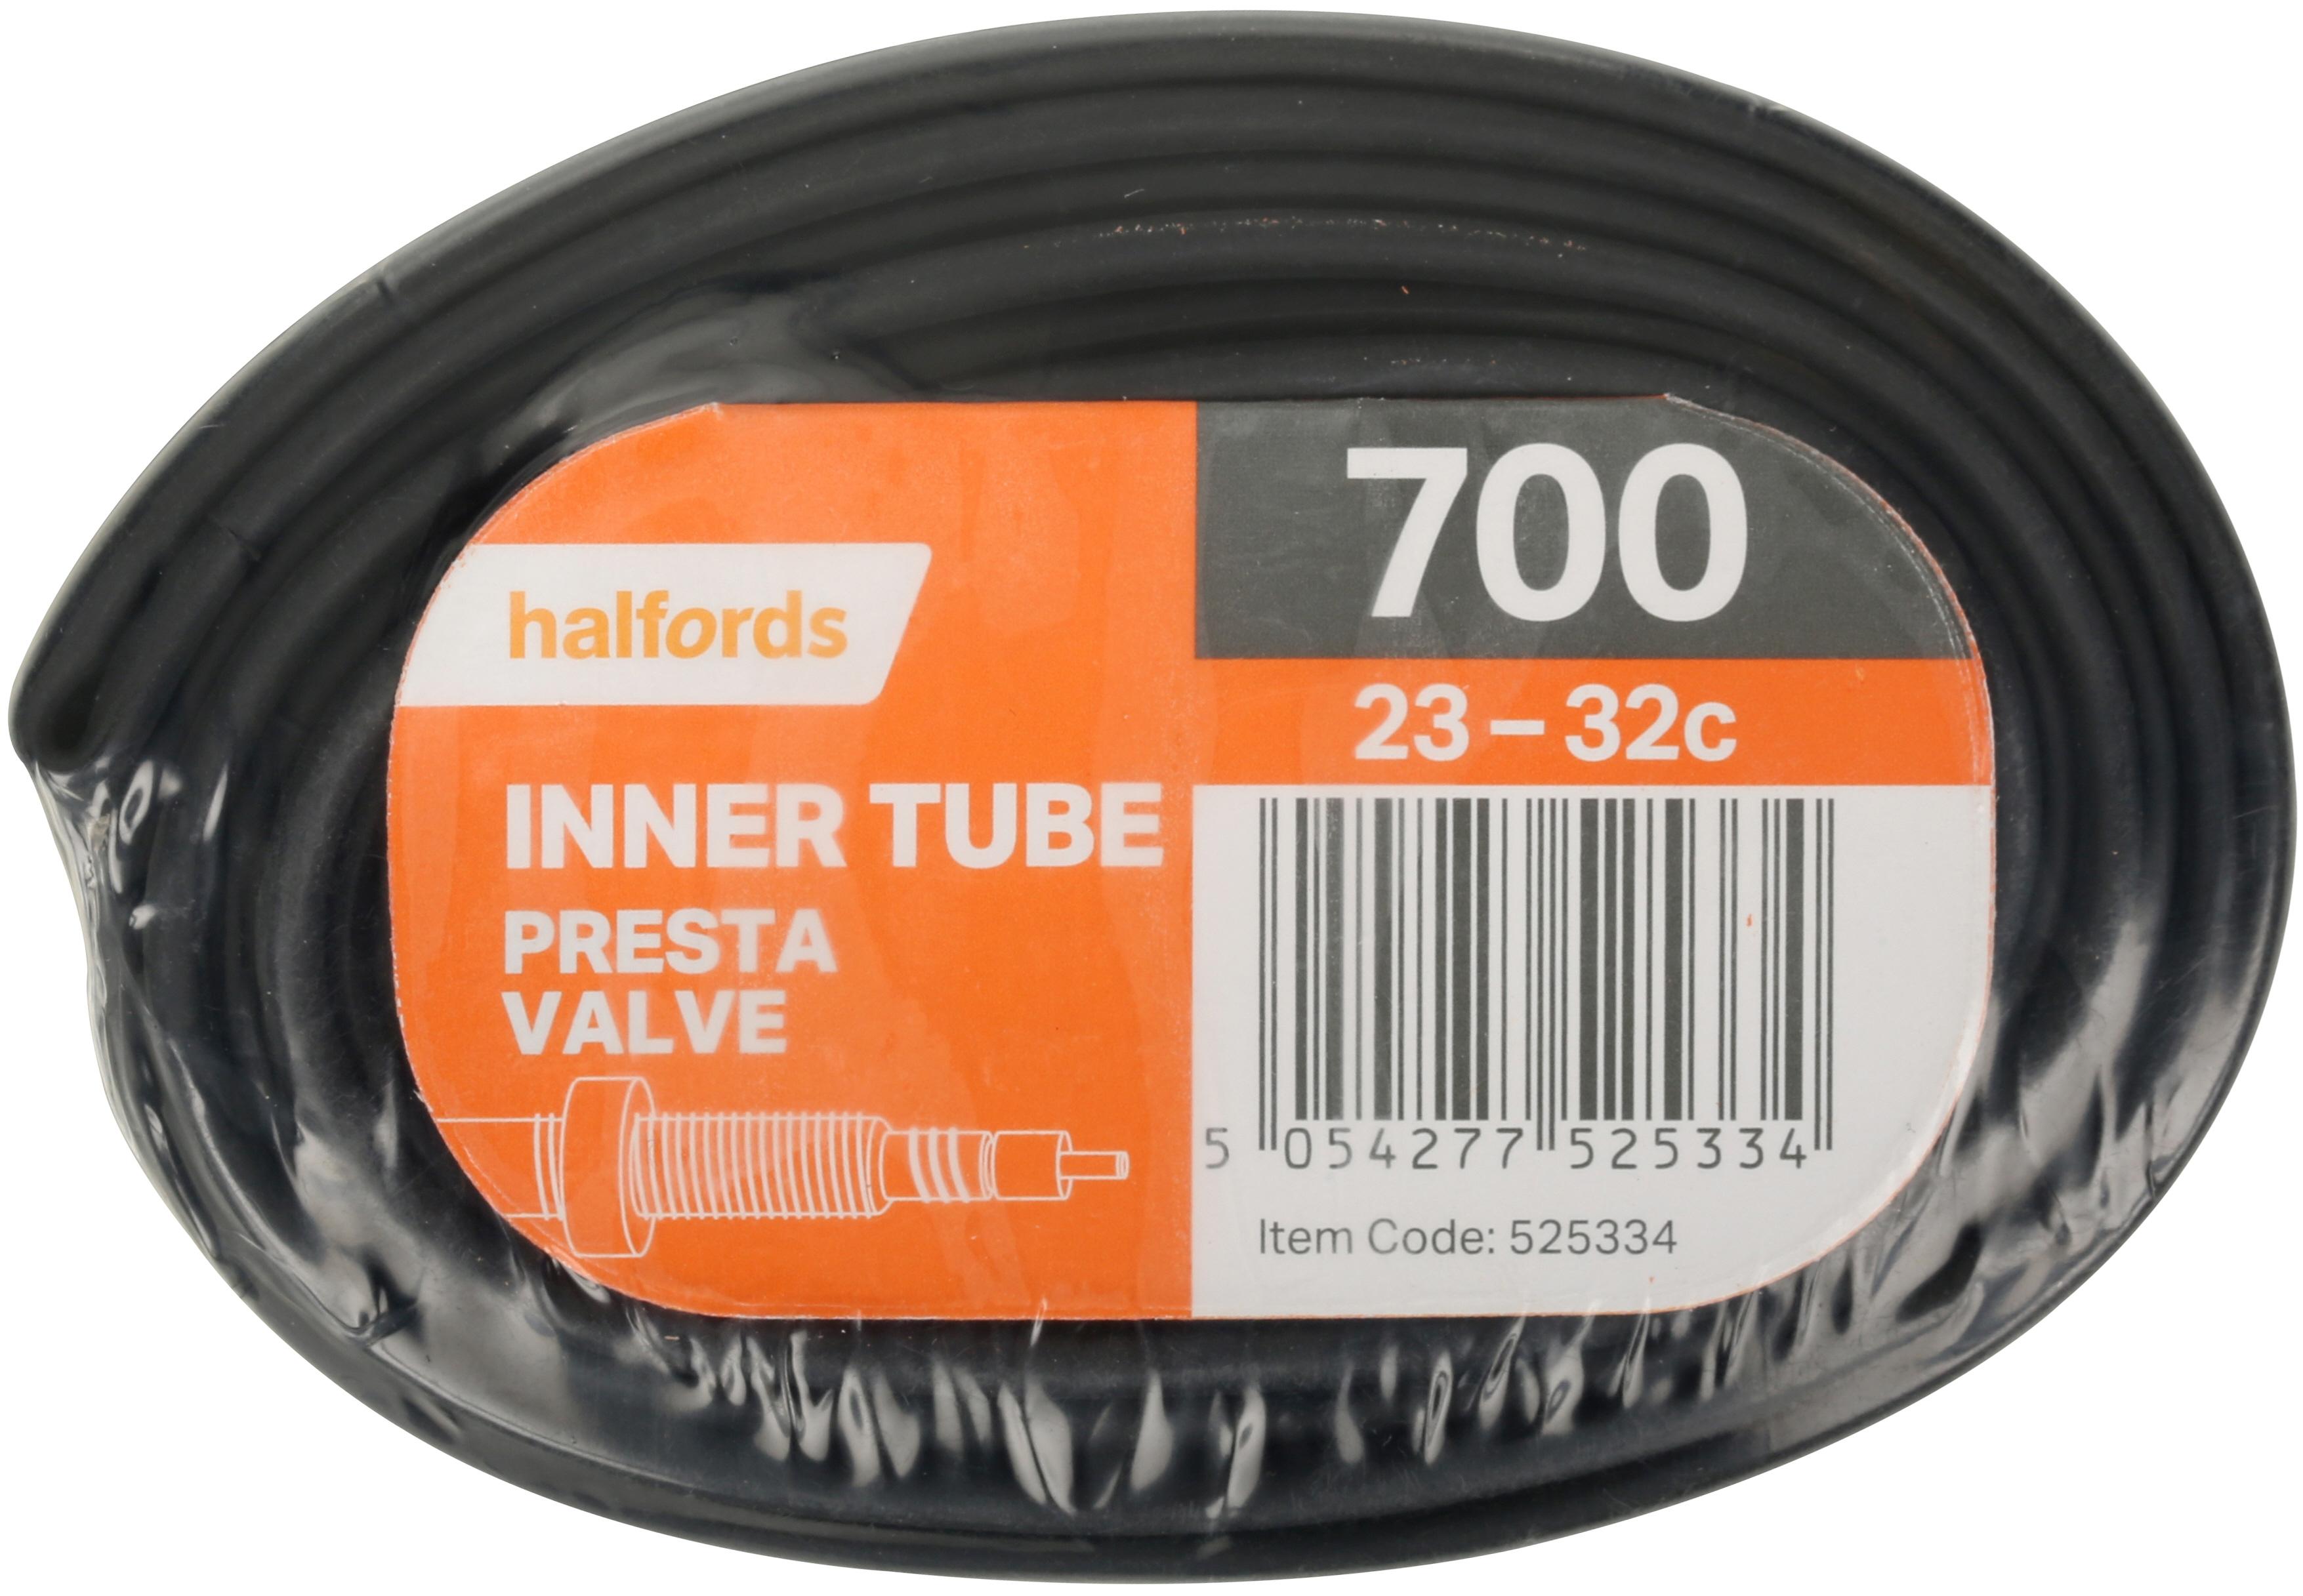 halfords inner tube fitting